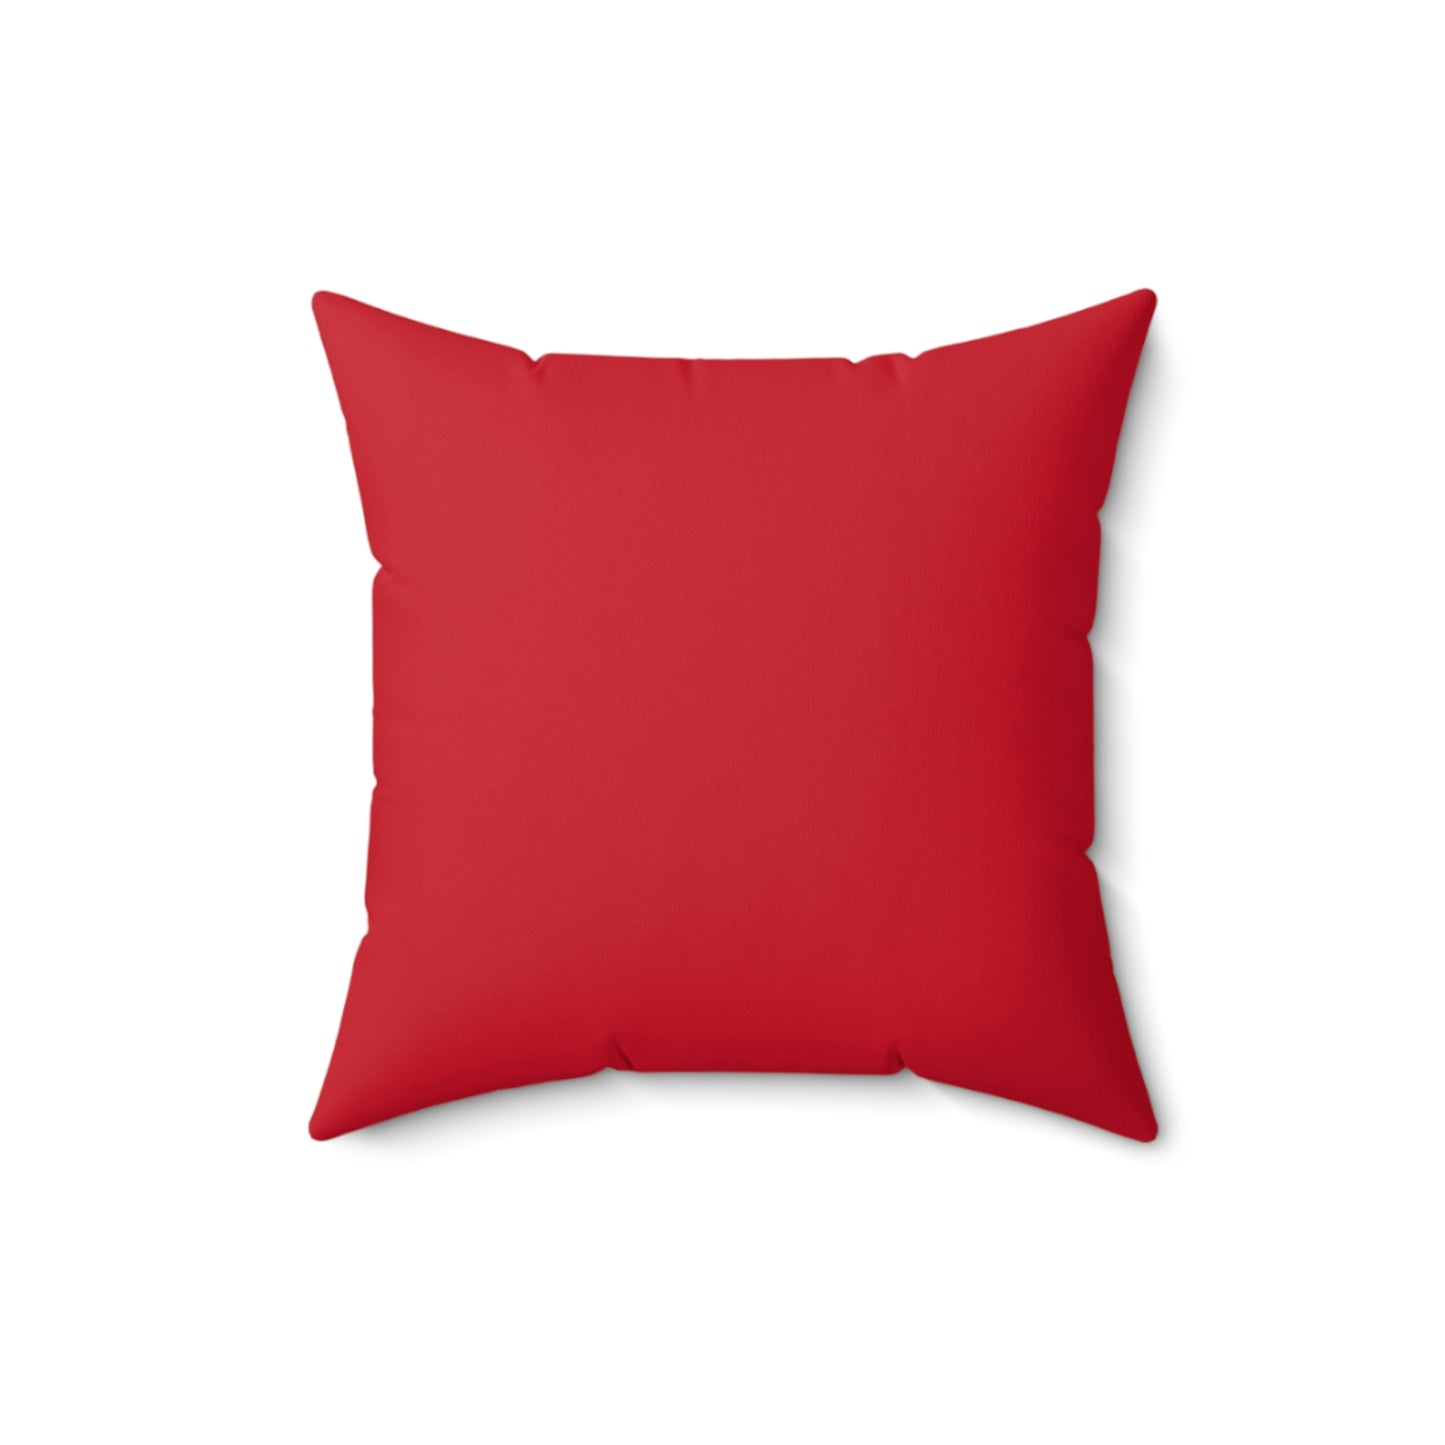 Spun Polyester Square Pillow Case “Lemon Bicycle on Dark Red”